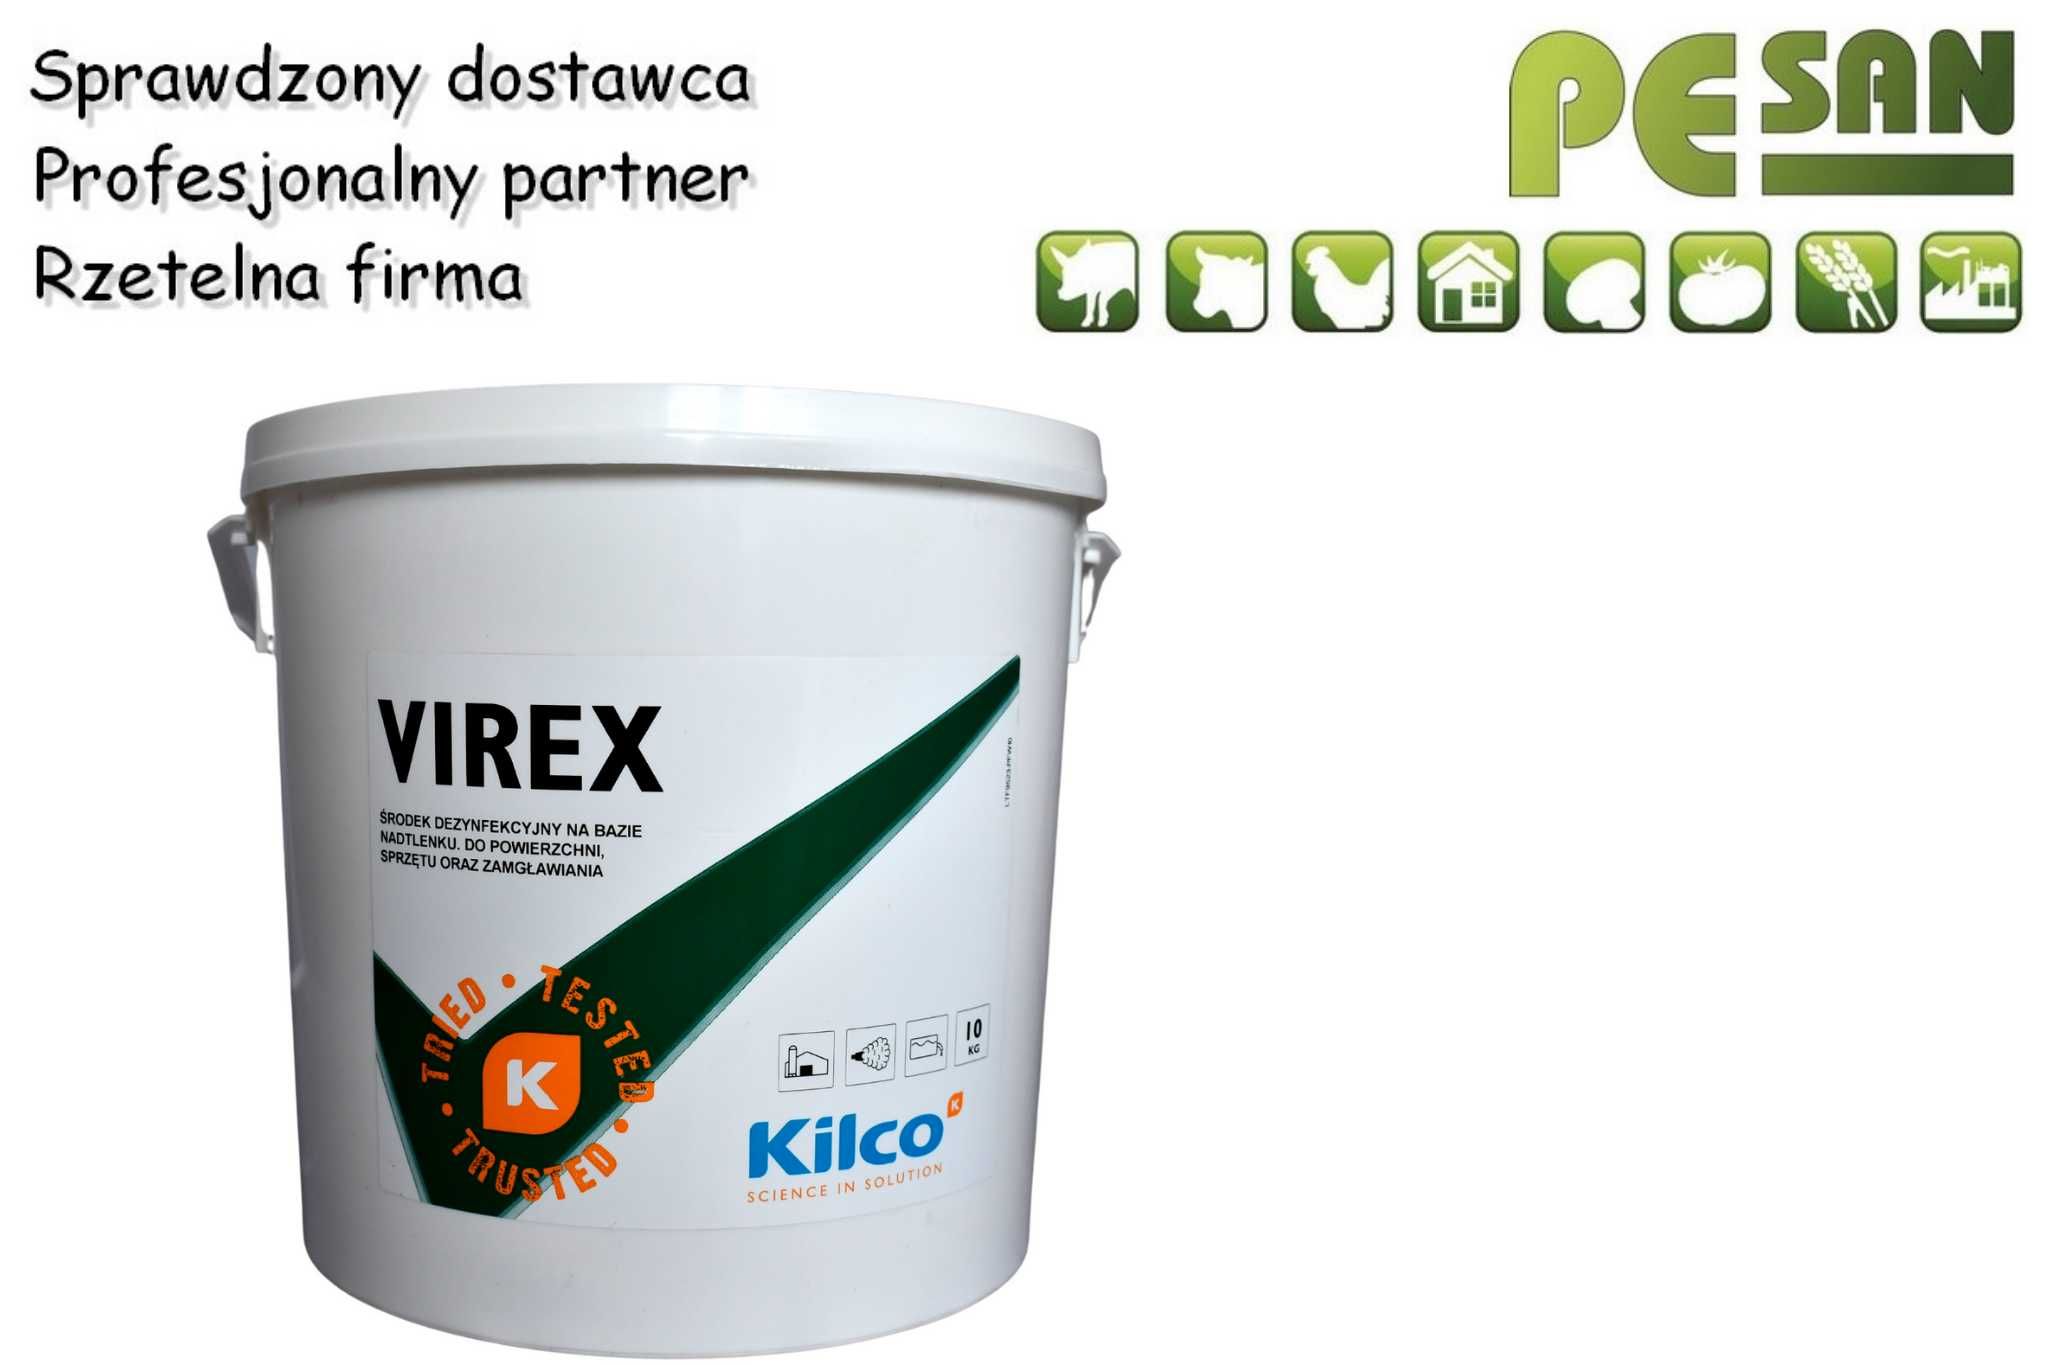 VIREX 5 kg - dezynfekcja budynków, maszyn, sanityzacja